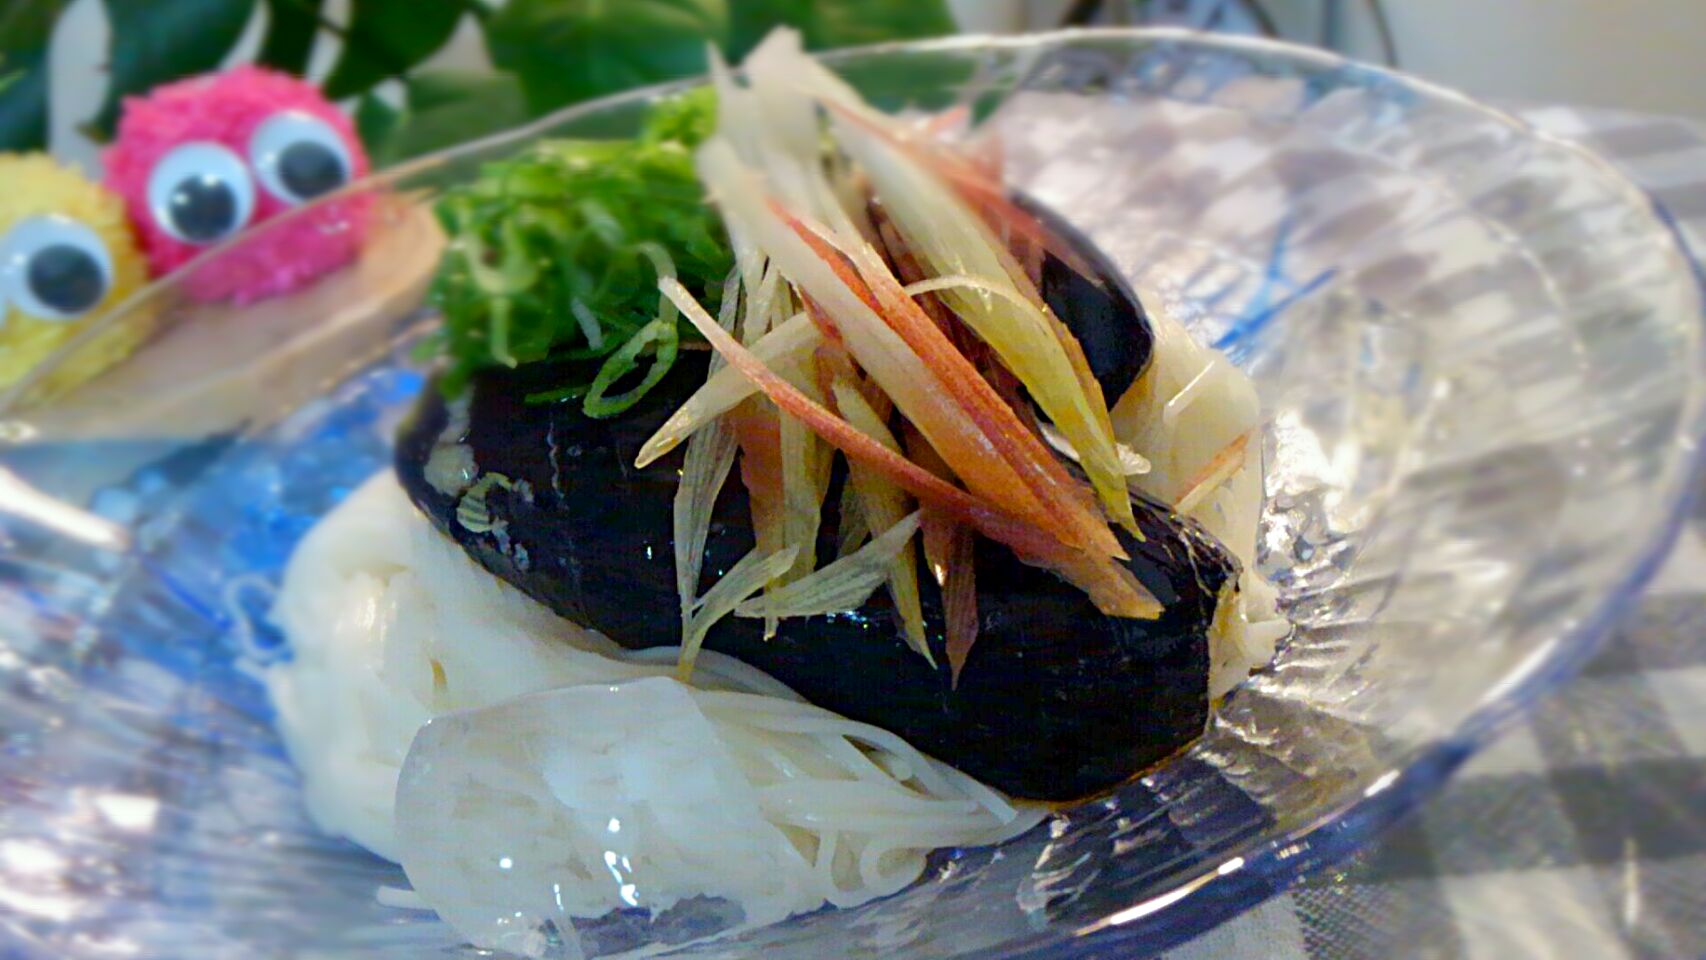 家庭菜園で収穫した茄子で……
さっぱりに………ピリ辛素麺です☺︎